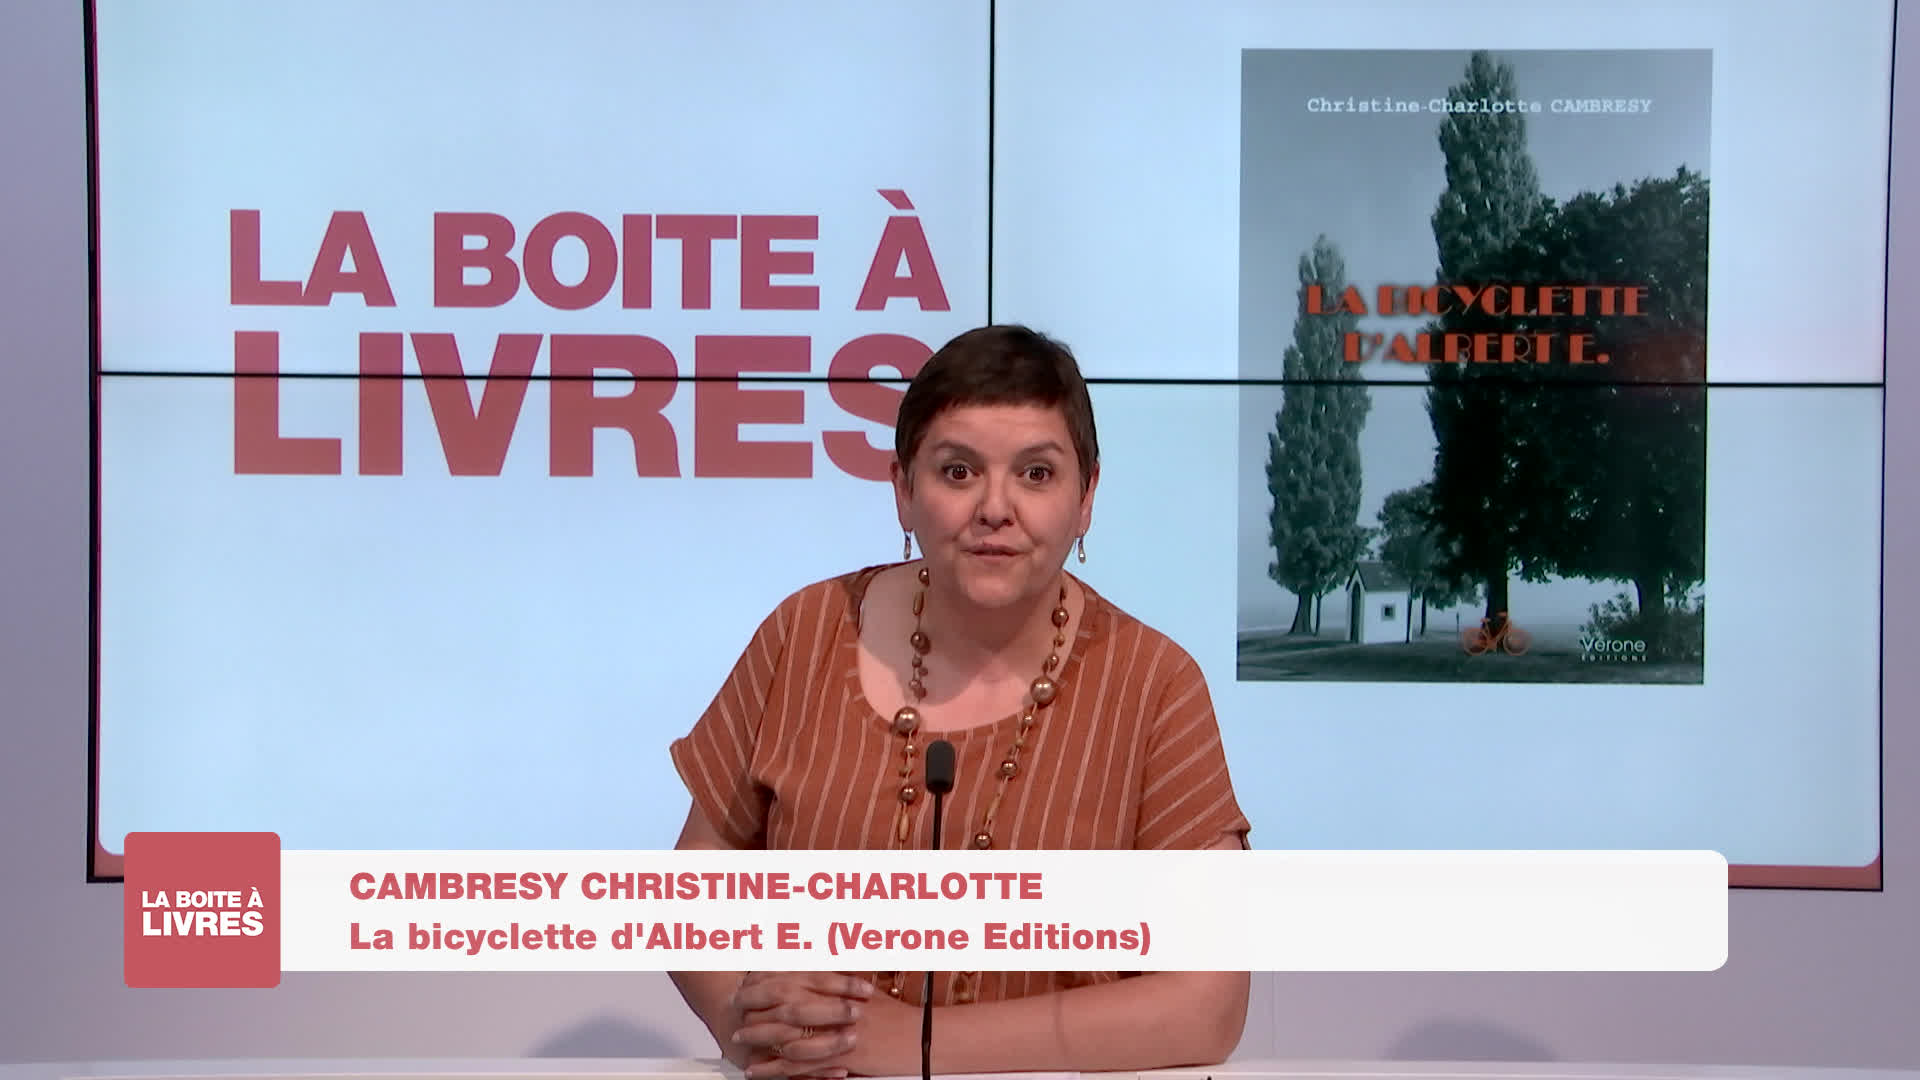 Boite à livres - Christine-Charlotte Cambresy, La bicyclette d'Albert E (Verone Editions)